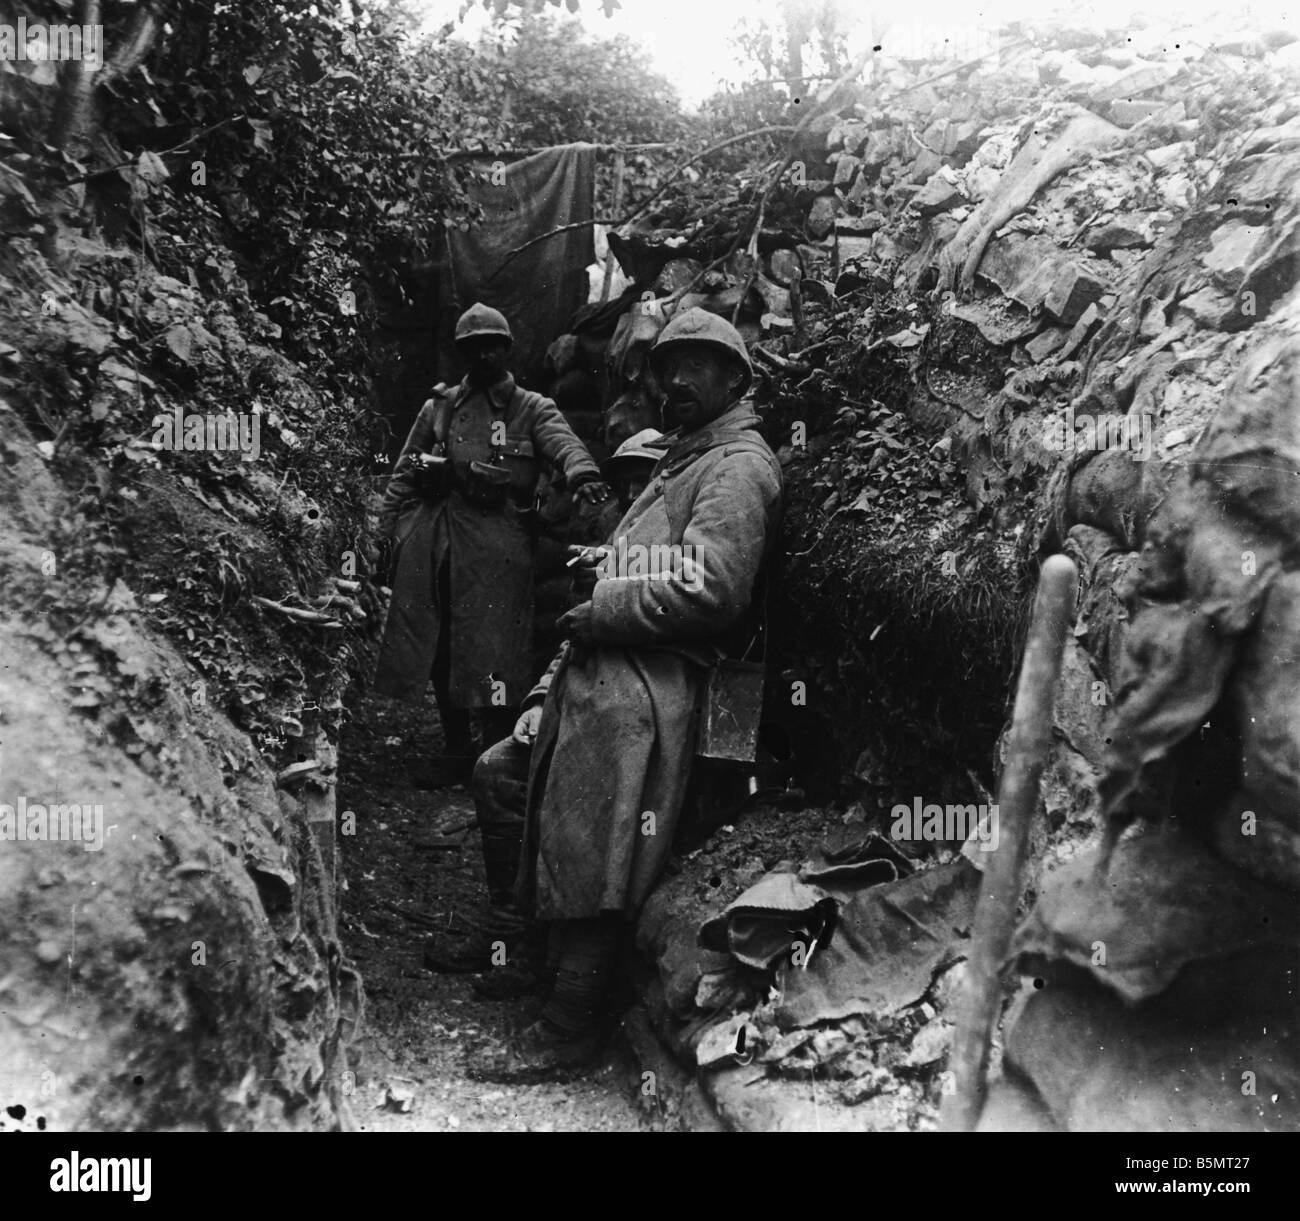 9FK 1916 6 0 A1 1 E Schlacht des Somme französischen Positionen Weltkrieg eine Frankreich-Schlacht an der Somme 23. Juni bis 26. November 191 Stockfoto